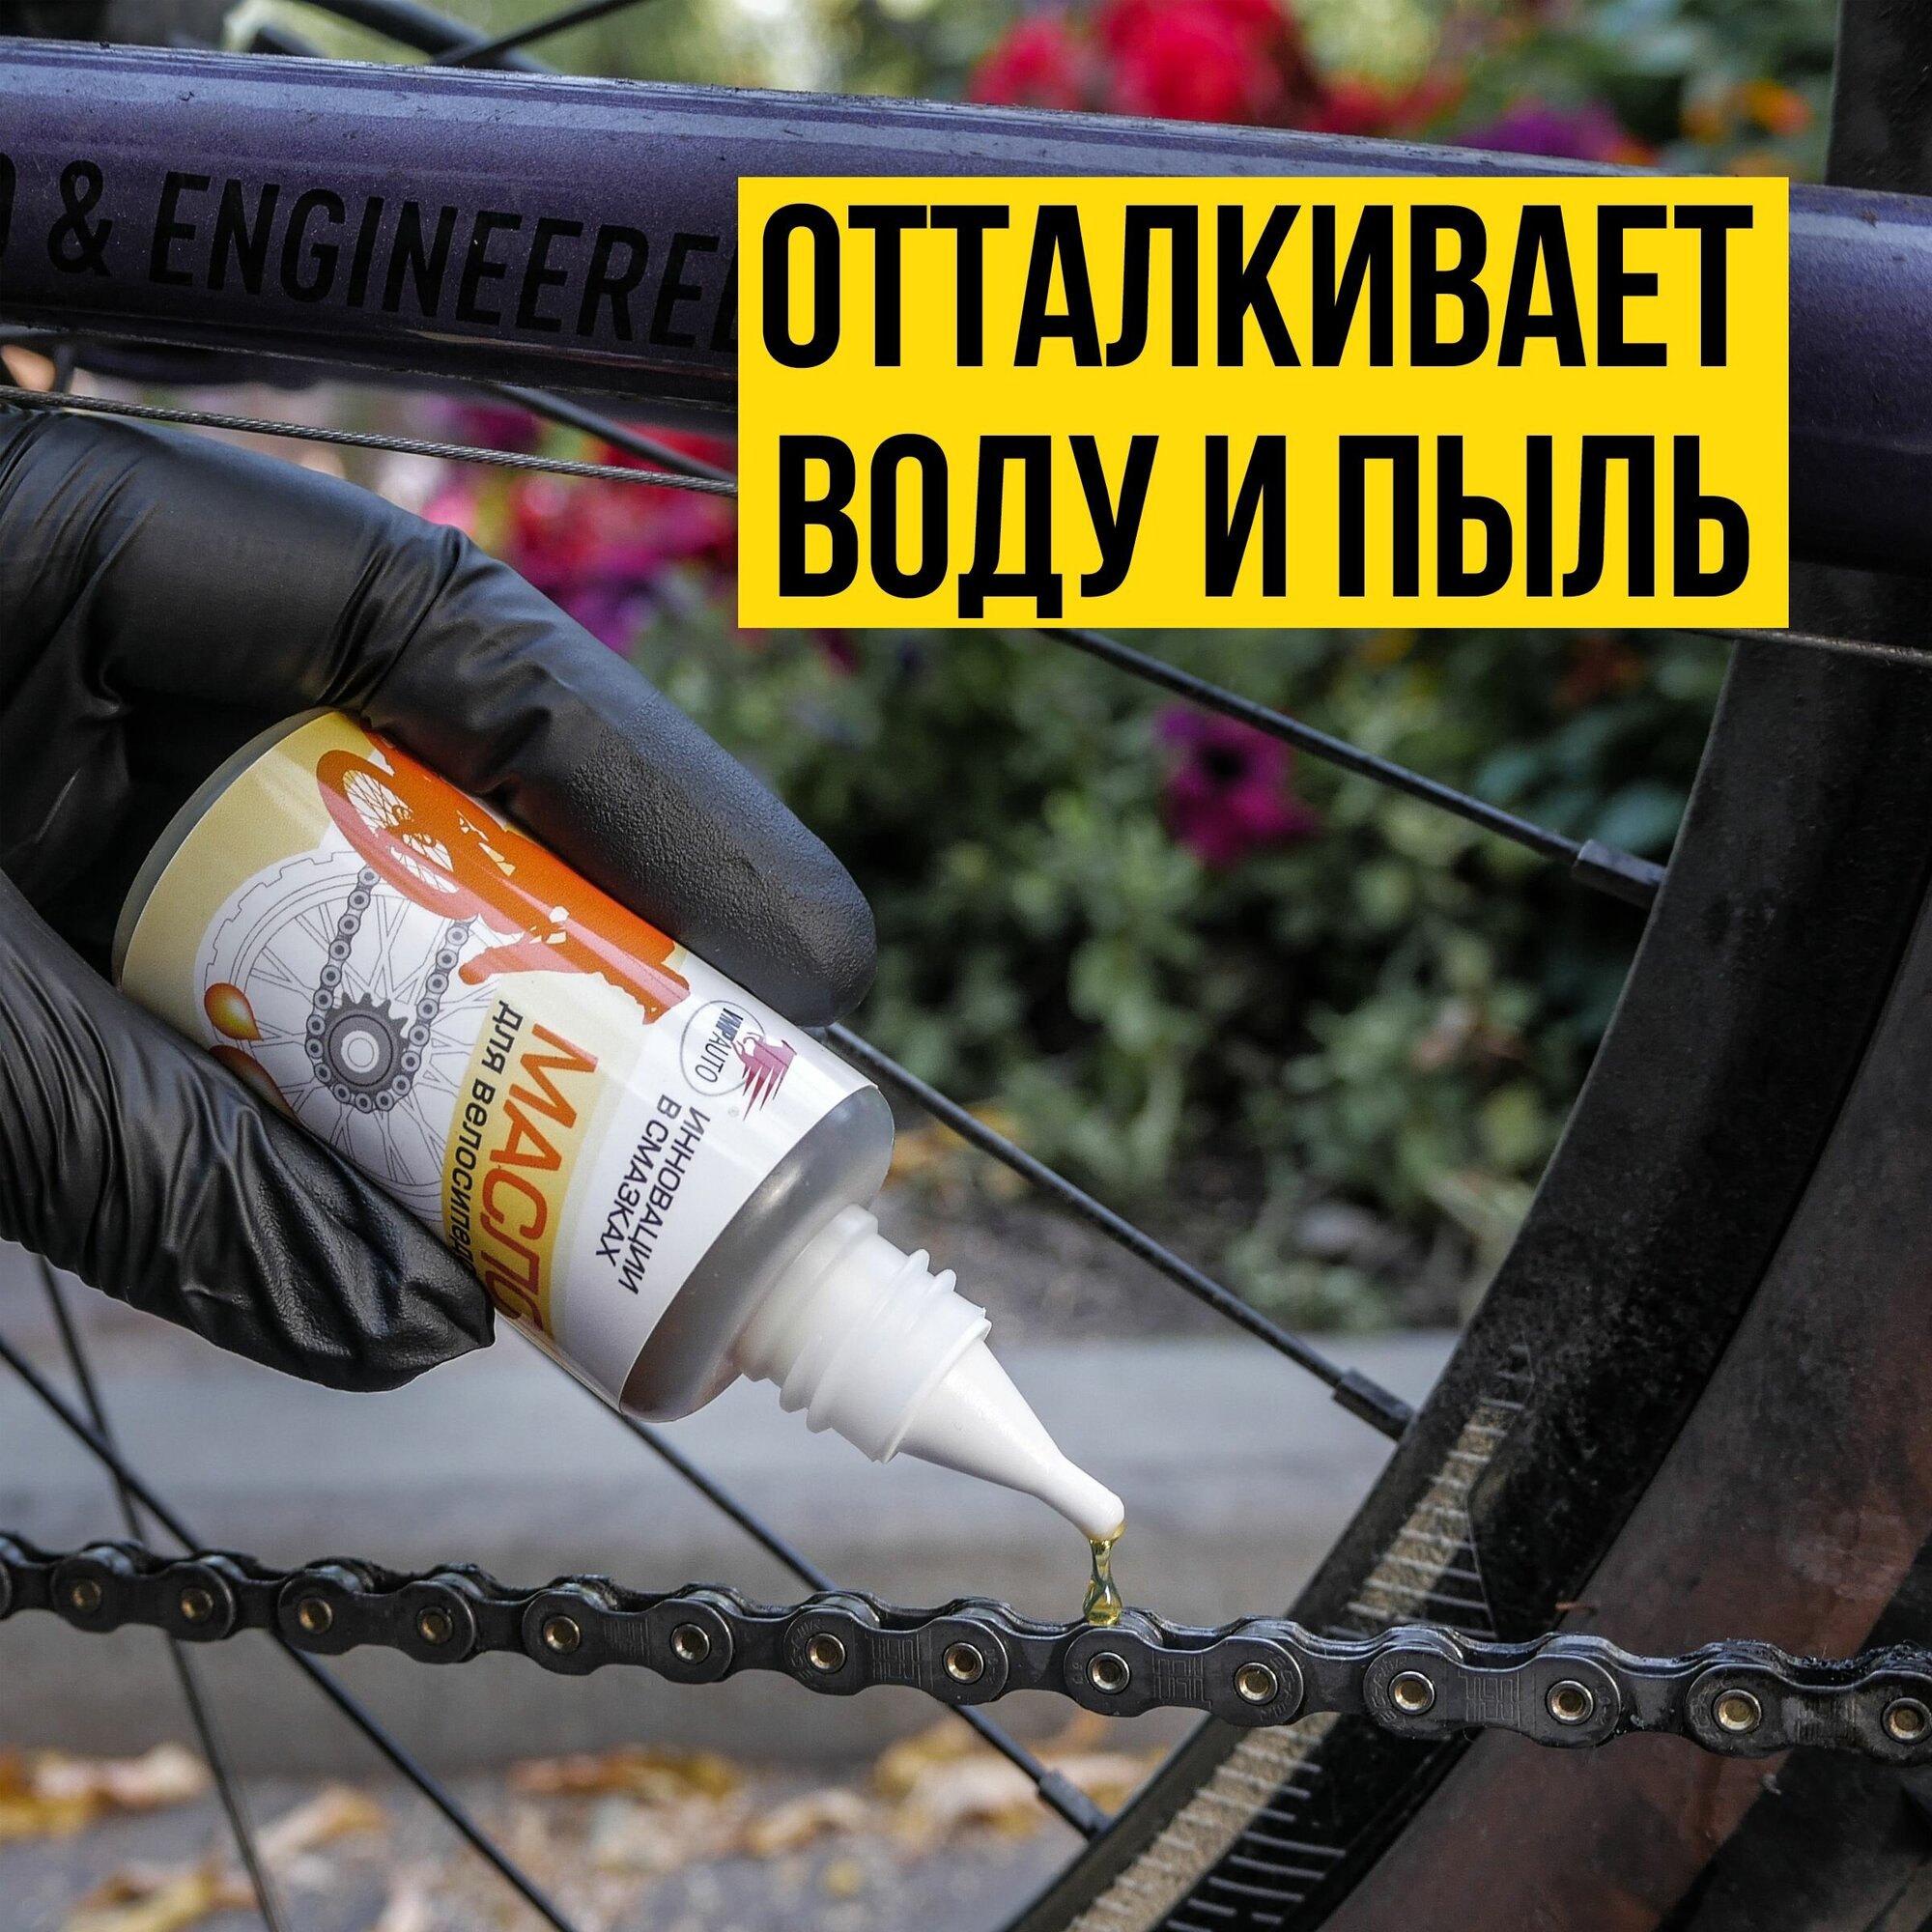 Минеральное антикоррозийное масло смазка для цепи велосипеда "ВМПАВТО", 45 мл